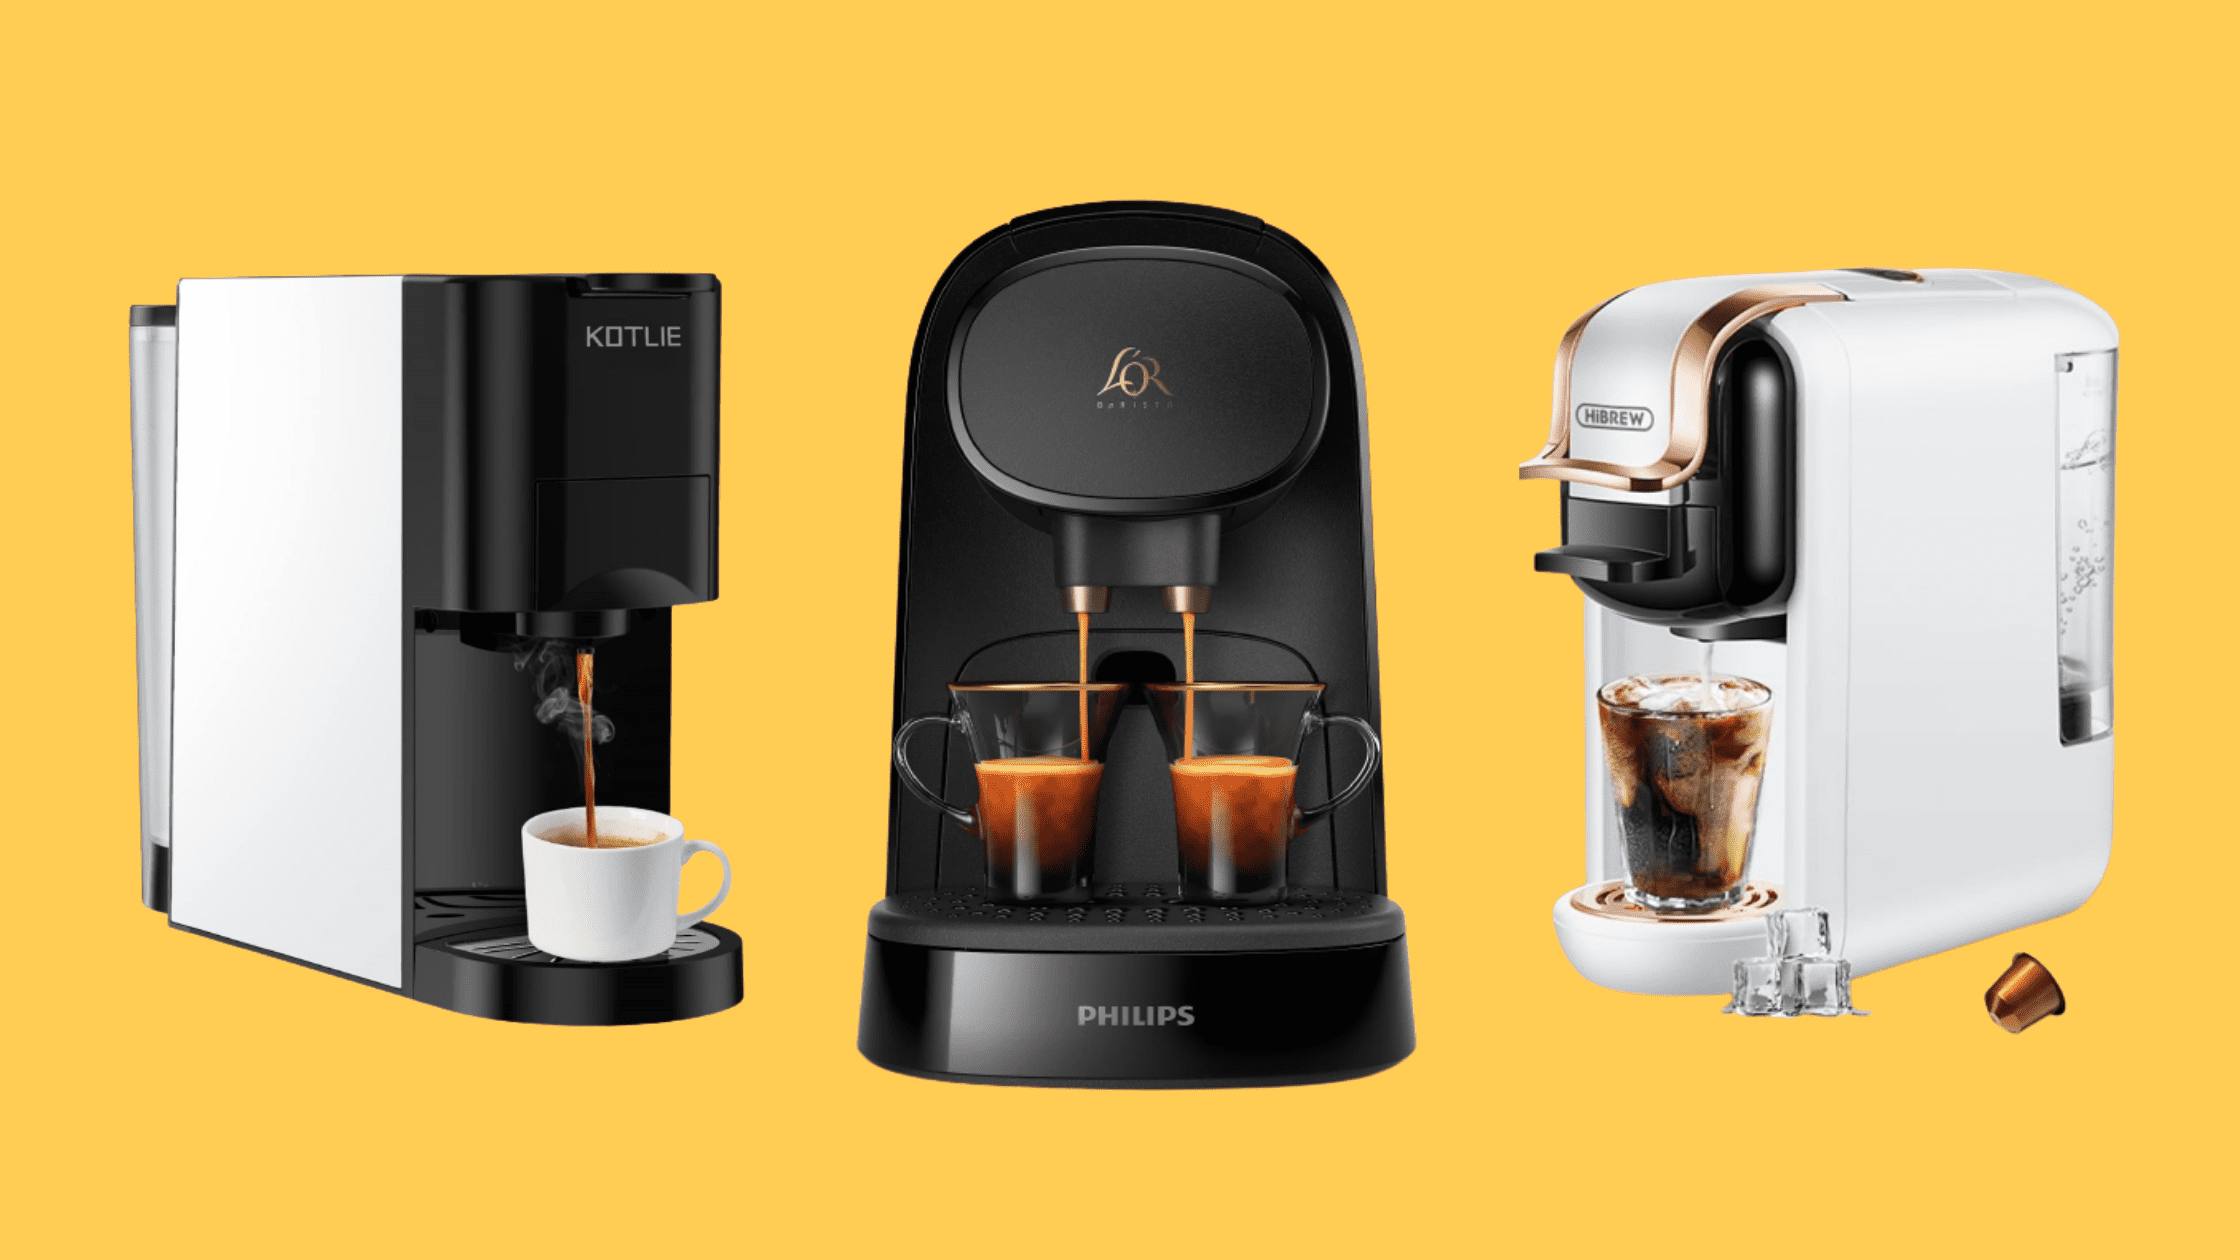 Machine à Café Multi Capsules, ESE, Nespresso, Dolce Gusto, Moulu